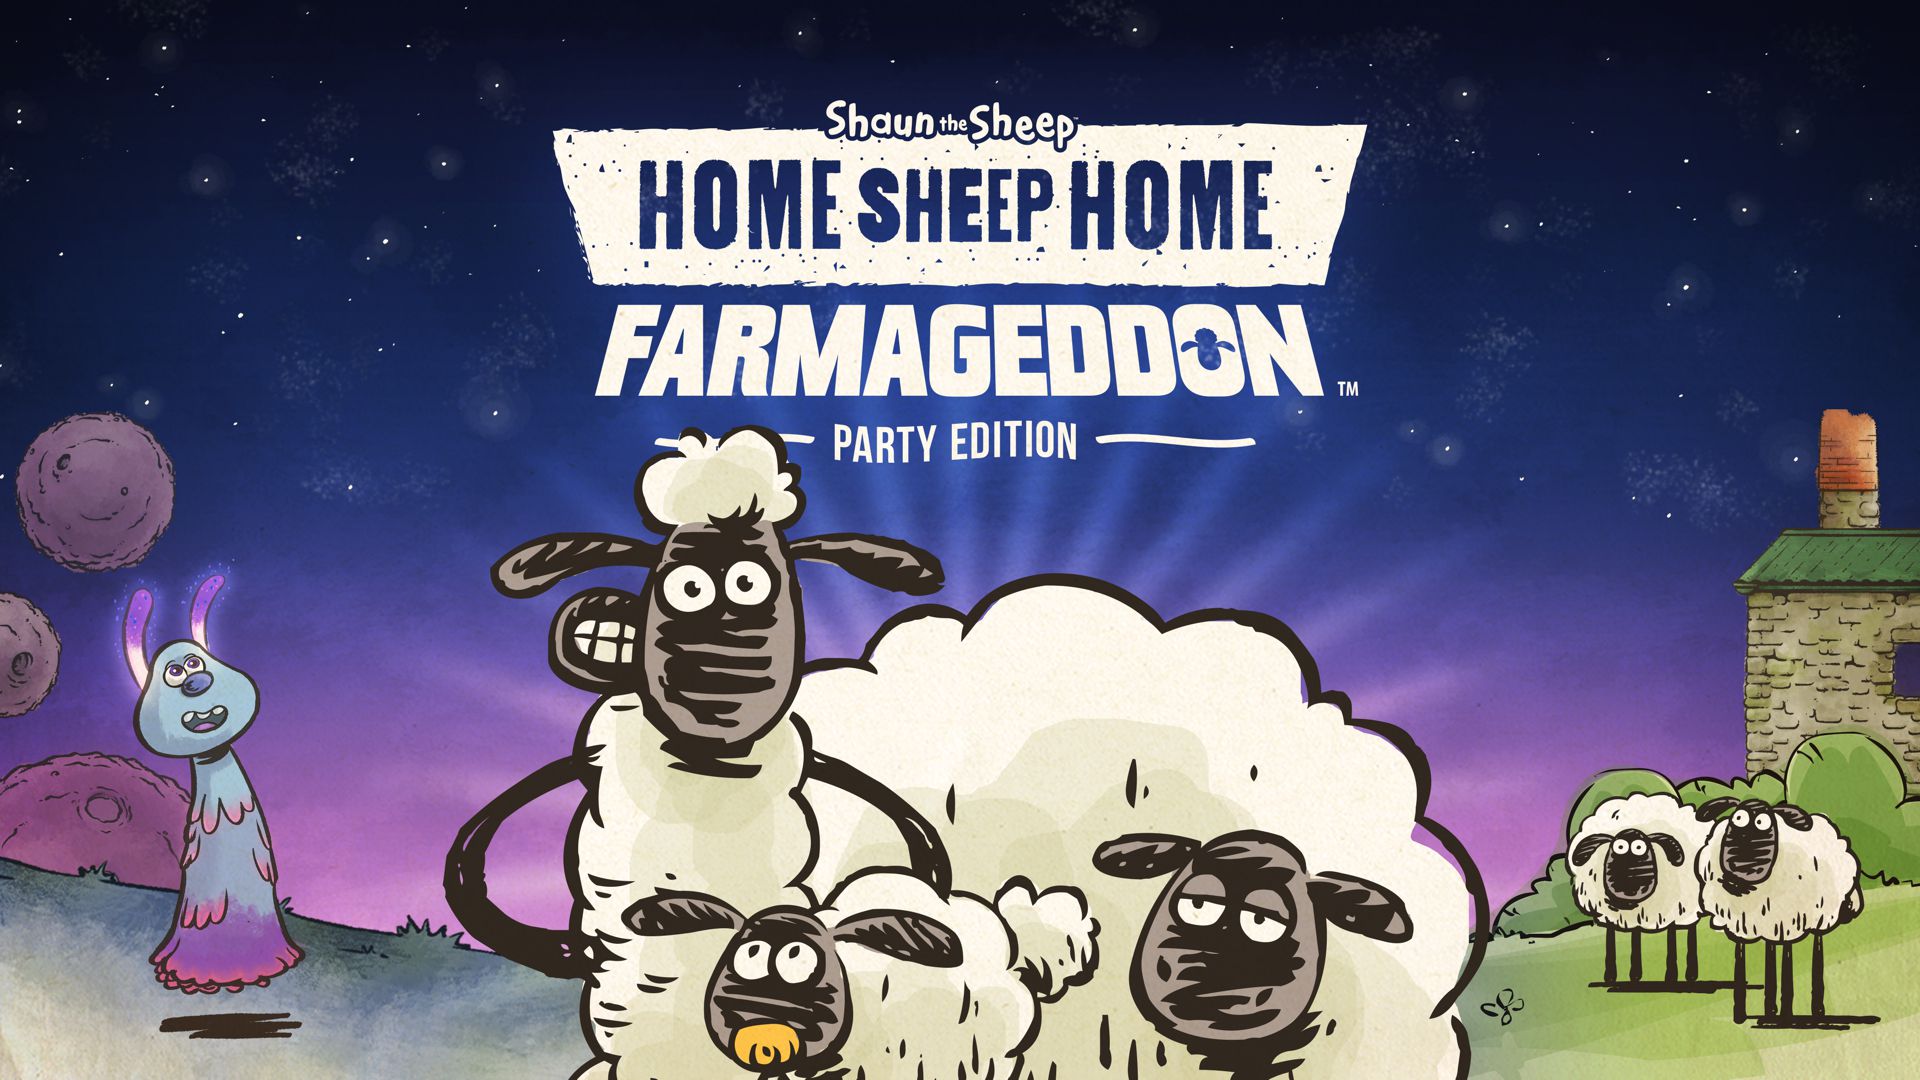 Home Sheep Home - Farmageddon Party Edition